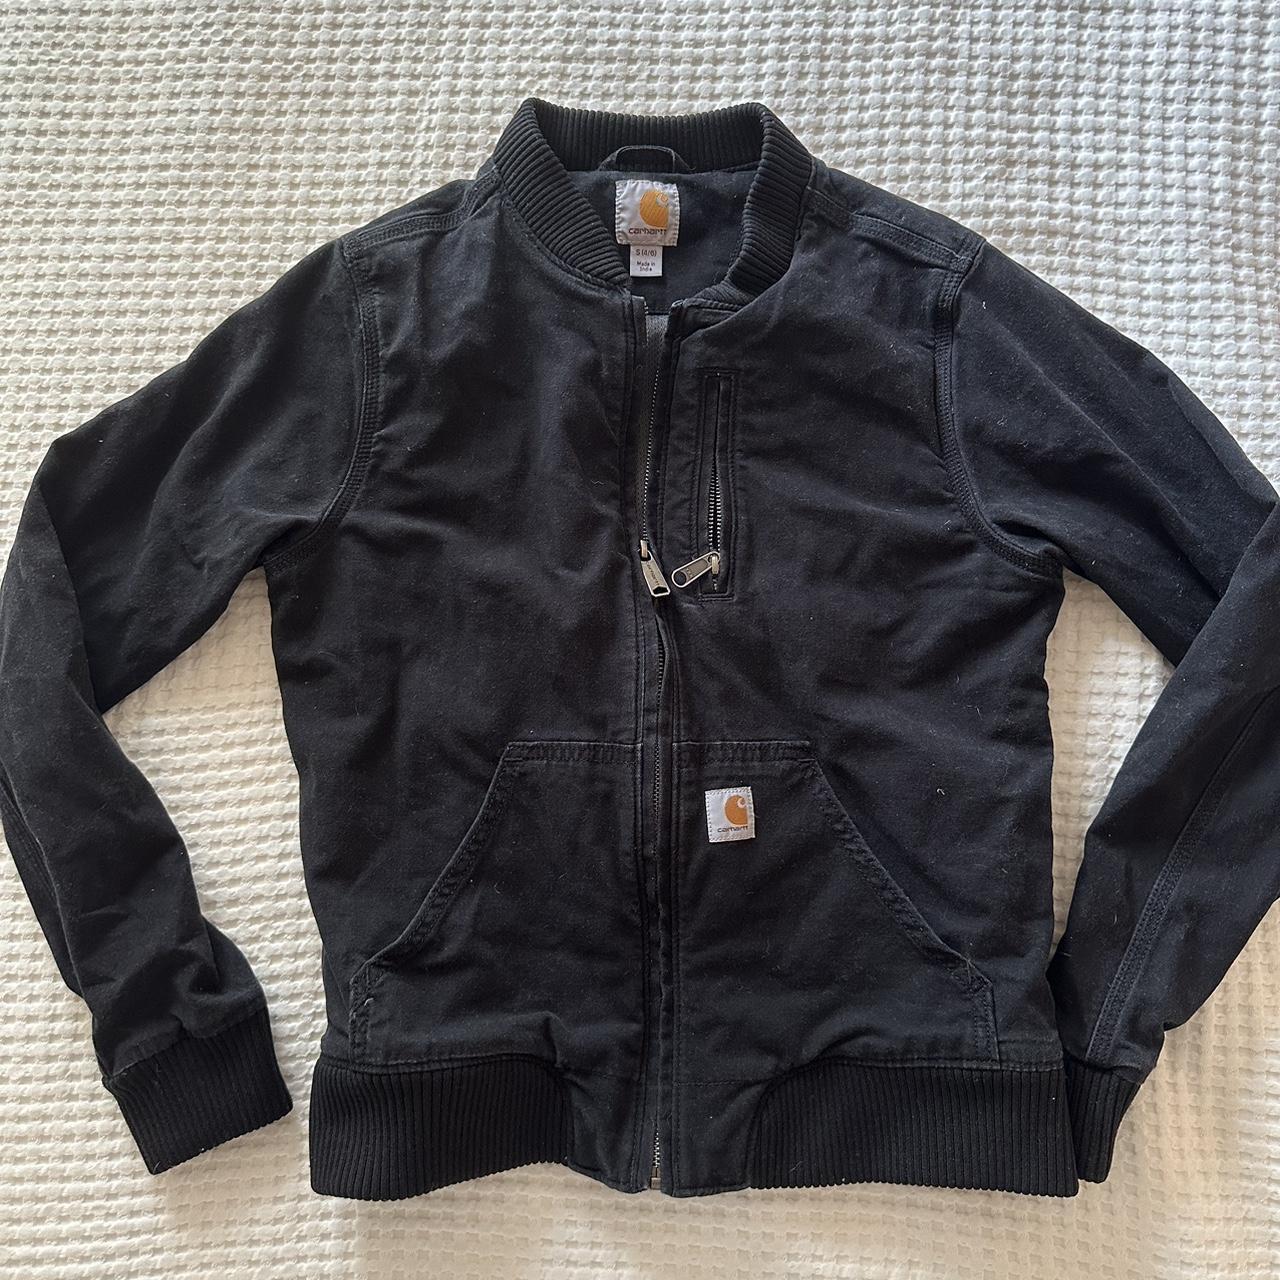 Carharrt black utility jacket - Depop